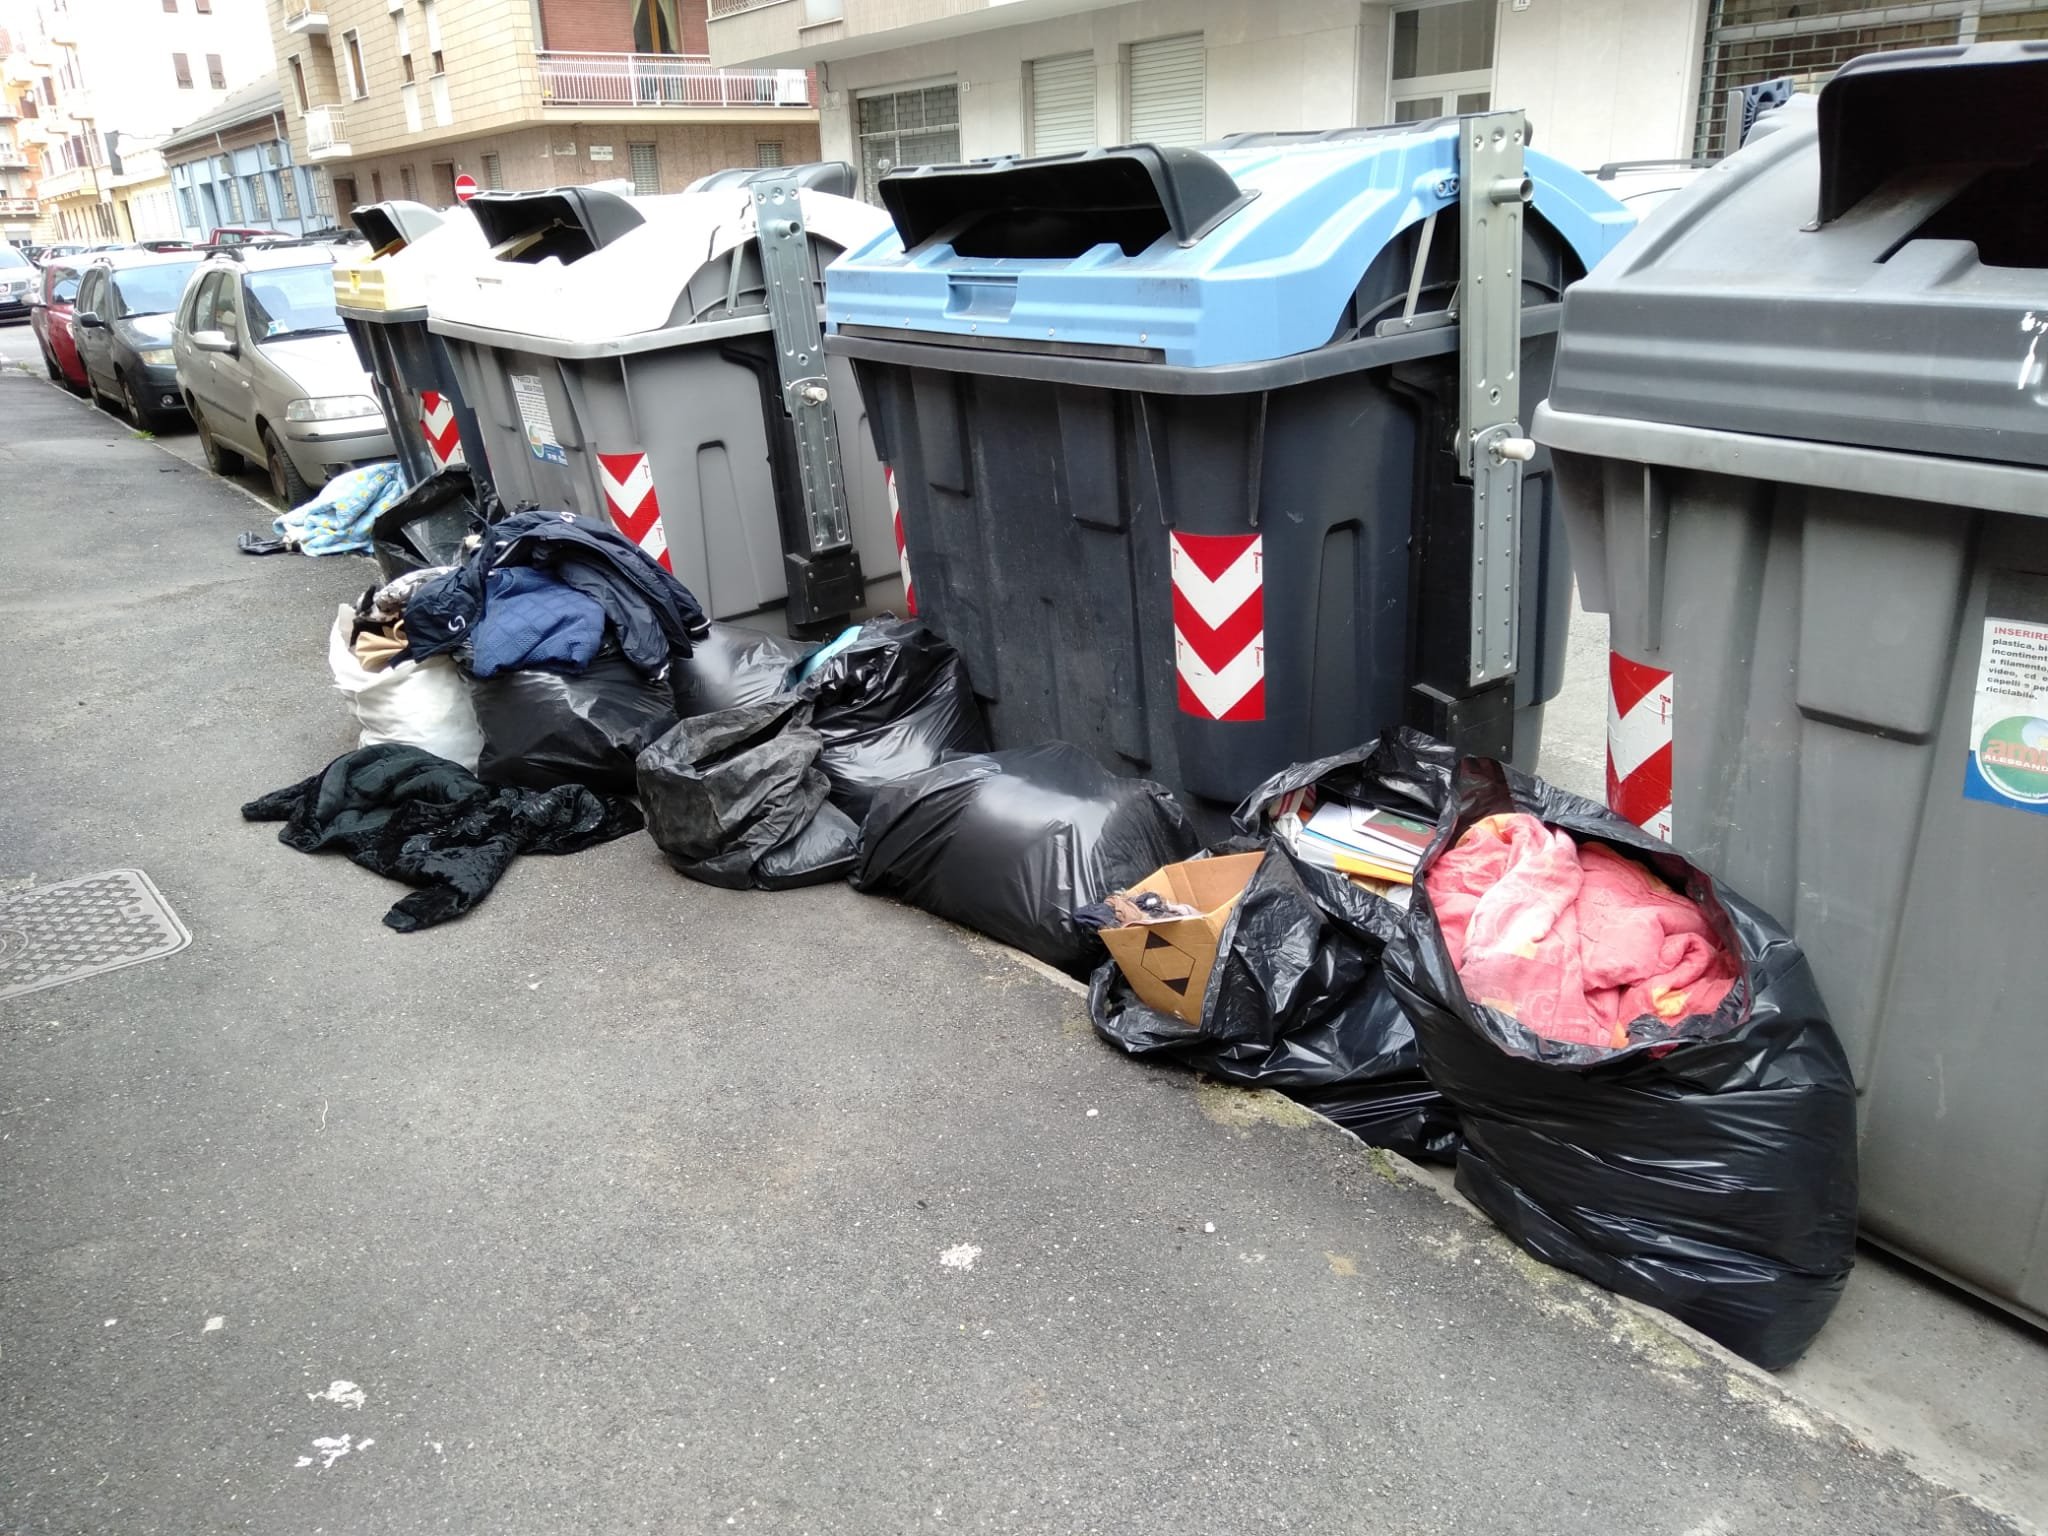 Rifiuti fuori cassonetto in via S. Gorizia ad Alessandria: multato e costretto a pulire